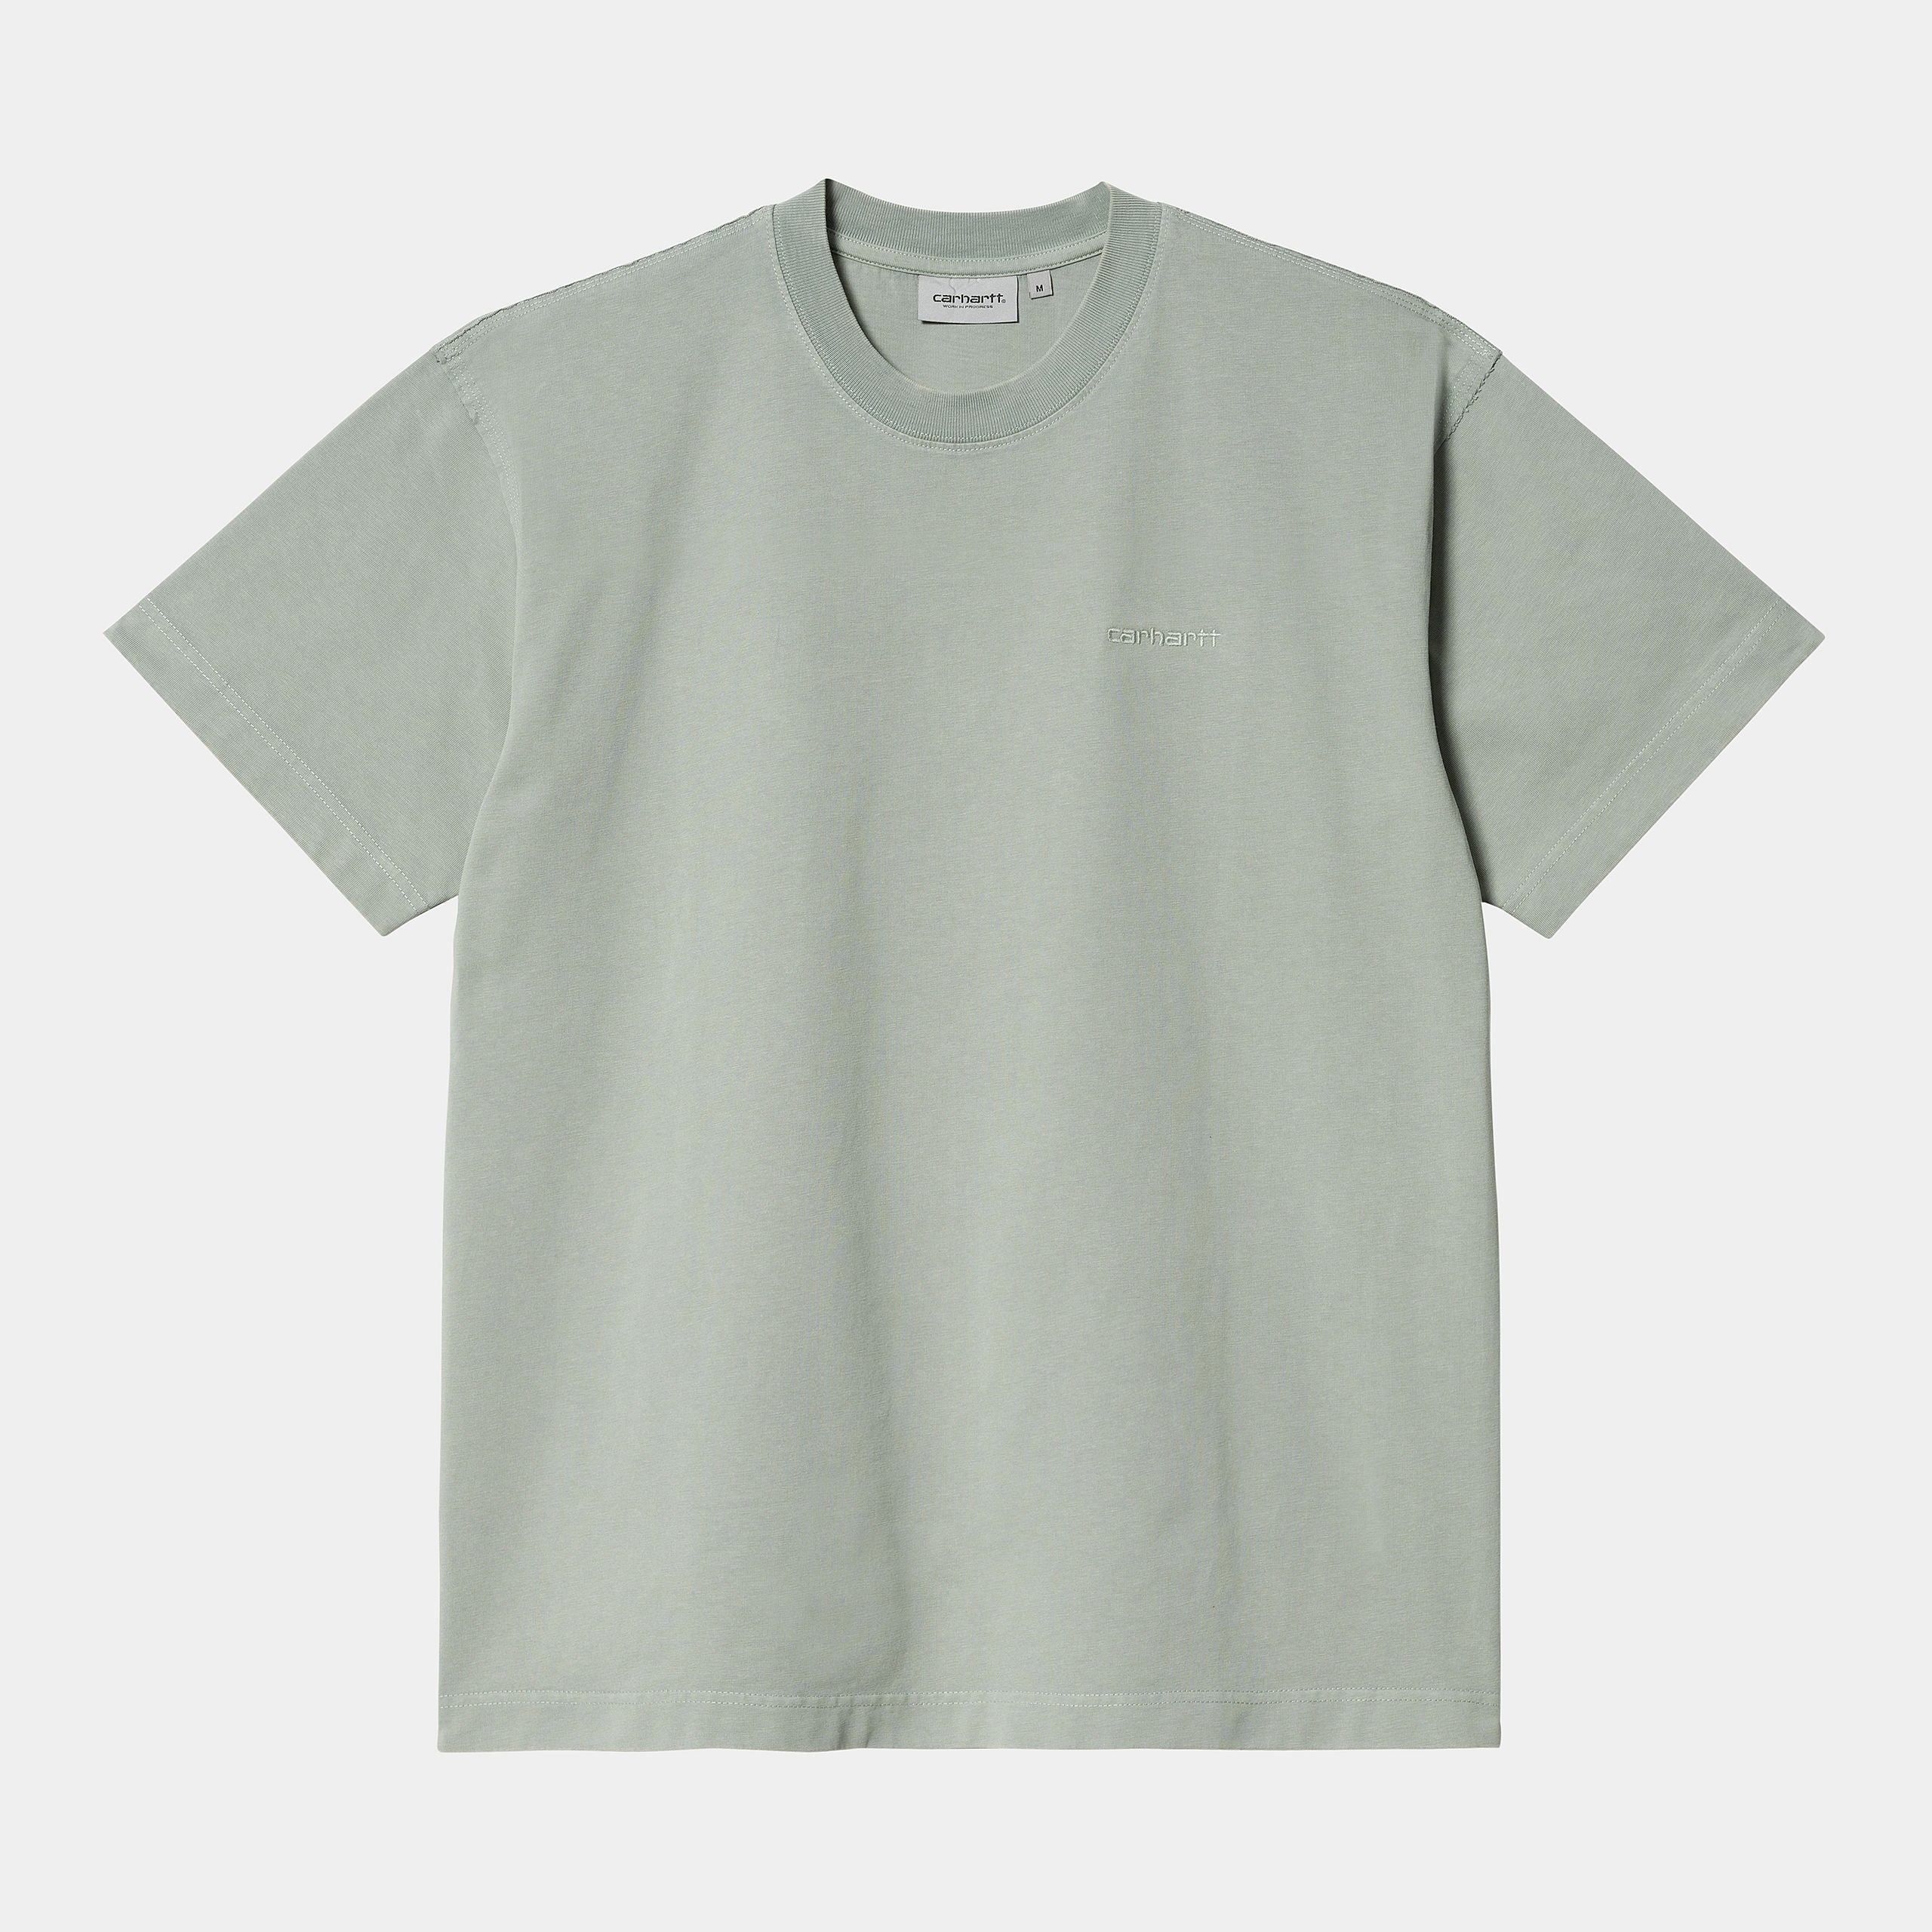 S/S Marfa T-Shirt von Carhartt WIP mit kleinem gestickten Carhartt Schriftzug in Farbe Mit.